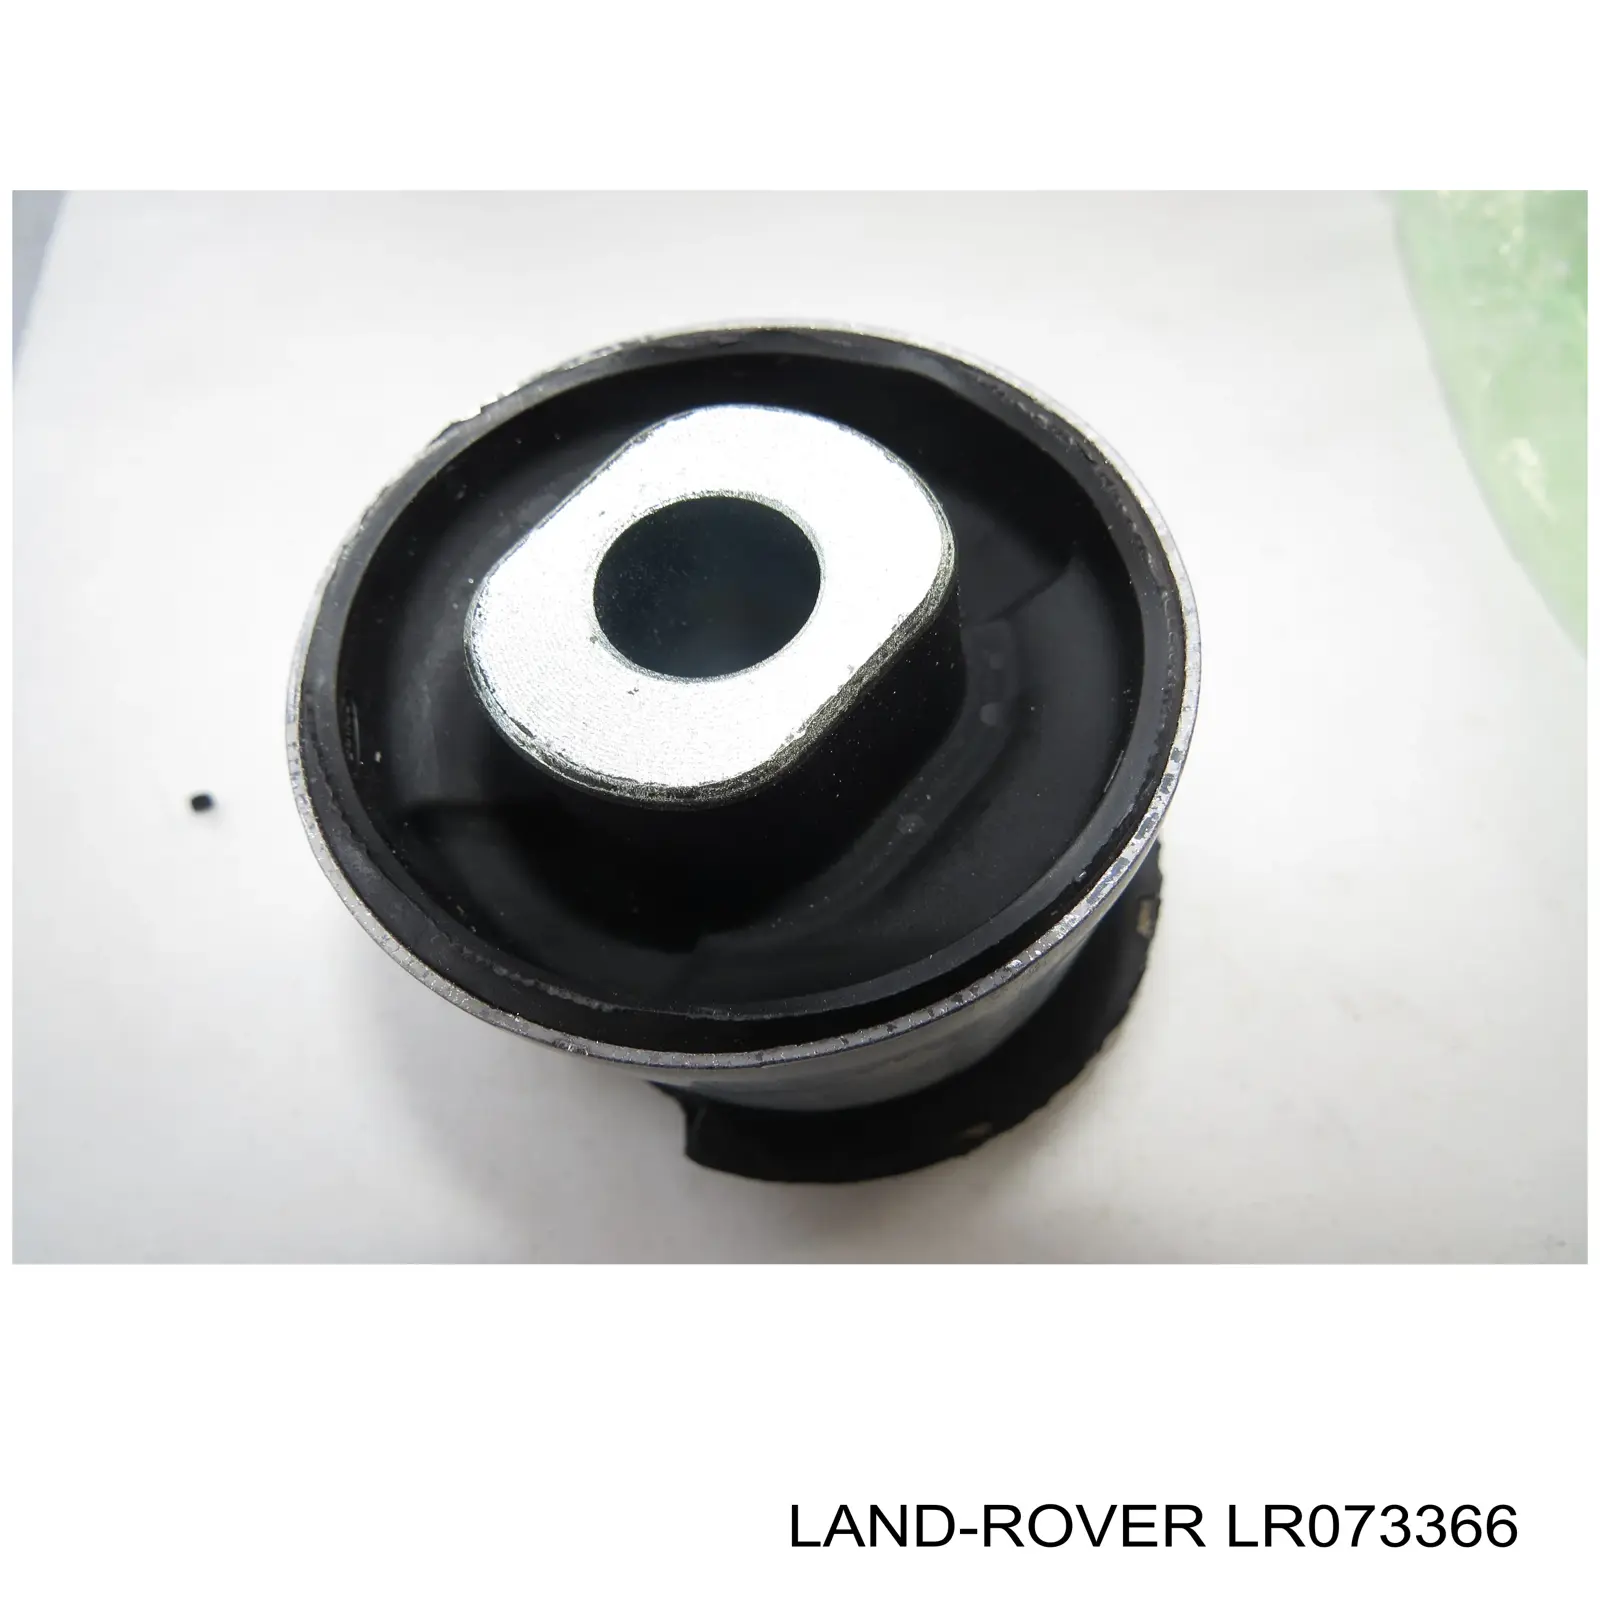 LR073366 Land Rover bloco silencioso dianteiro do braço oscilante inferior